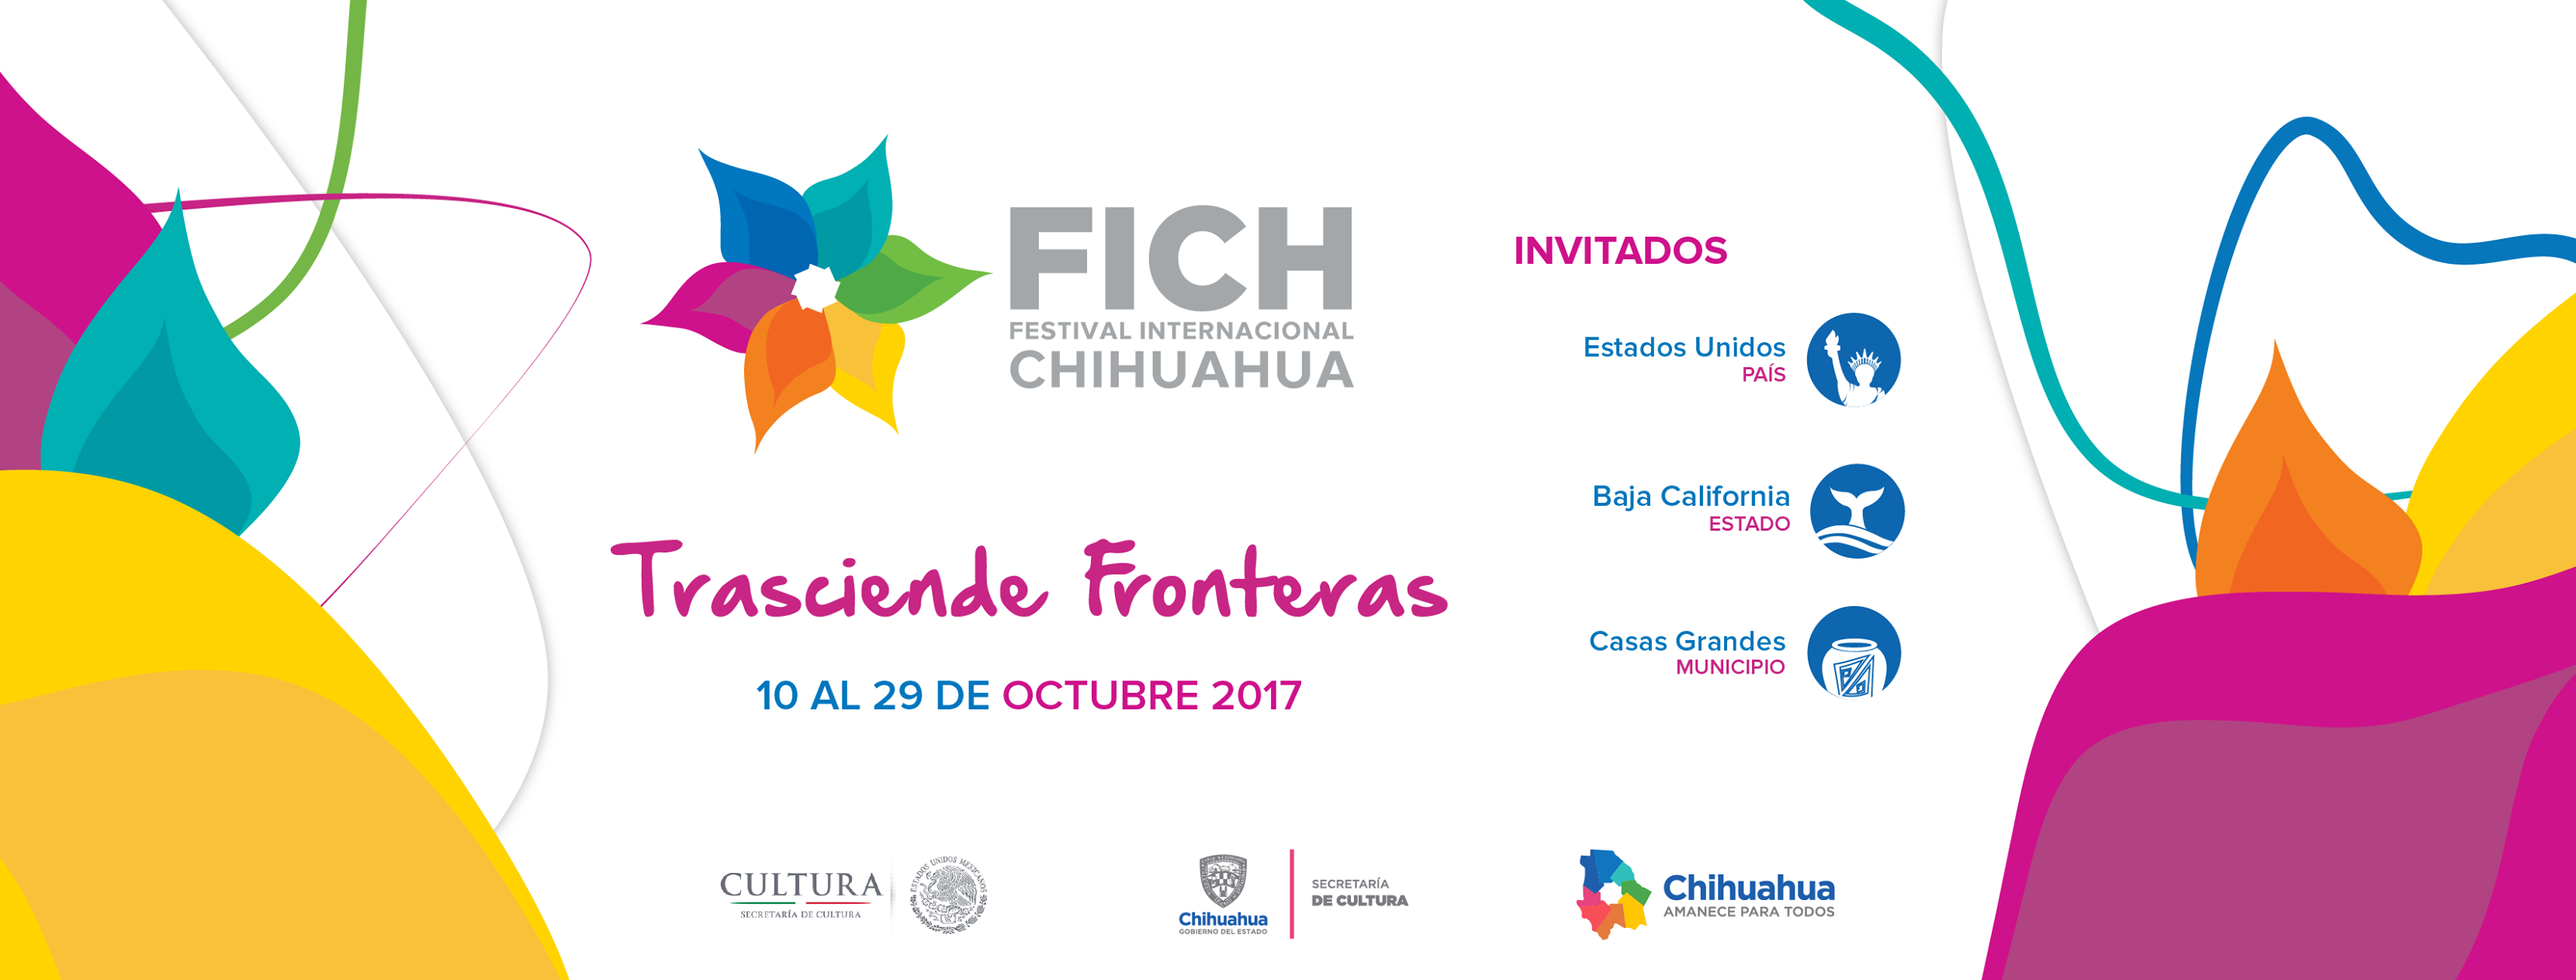 Festival Internacional Chihuahua Festivales México Sistema de